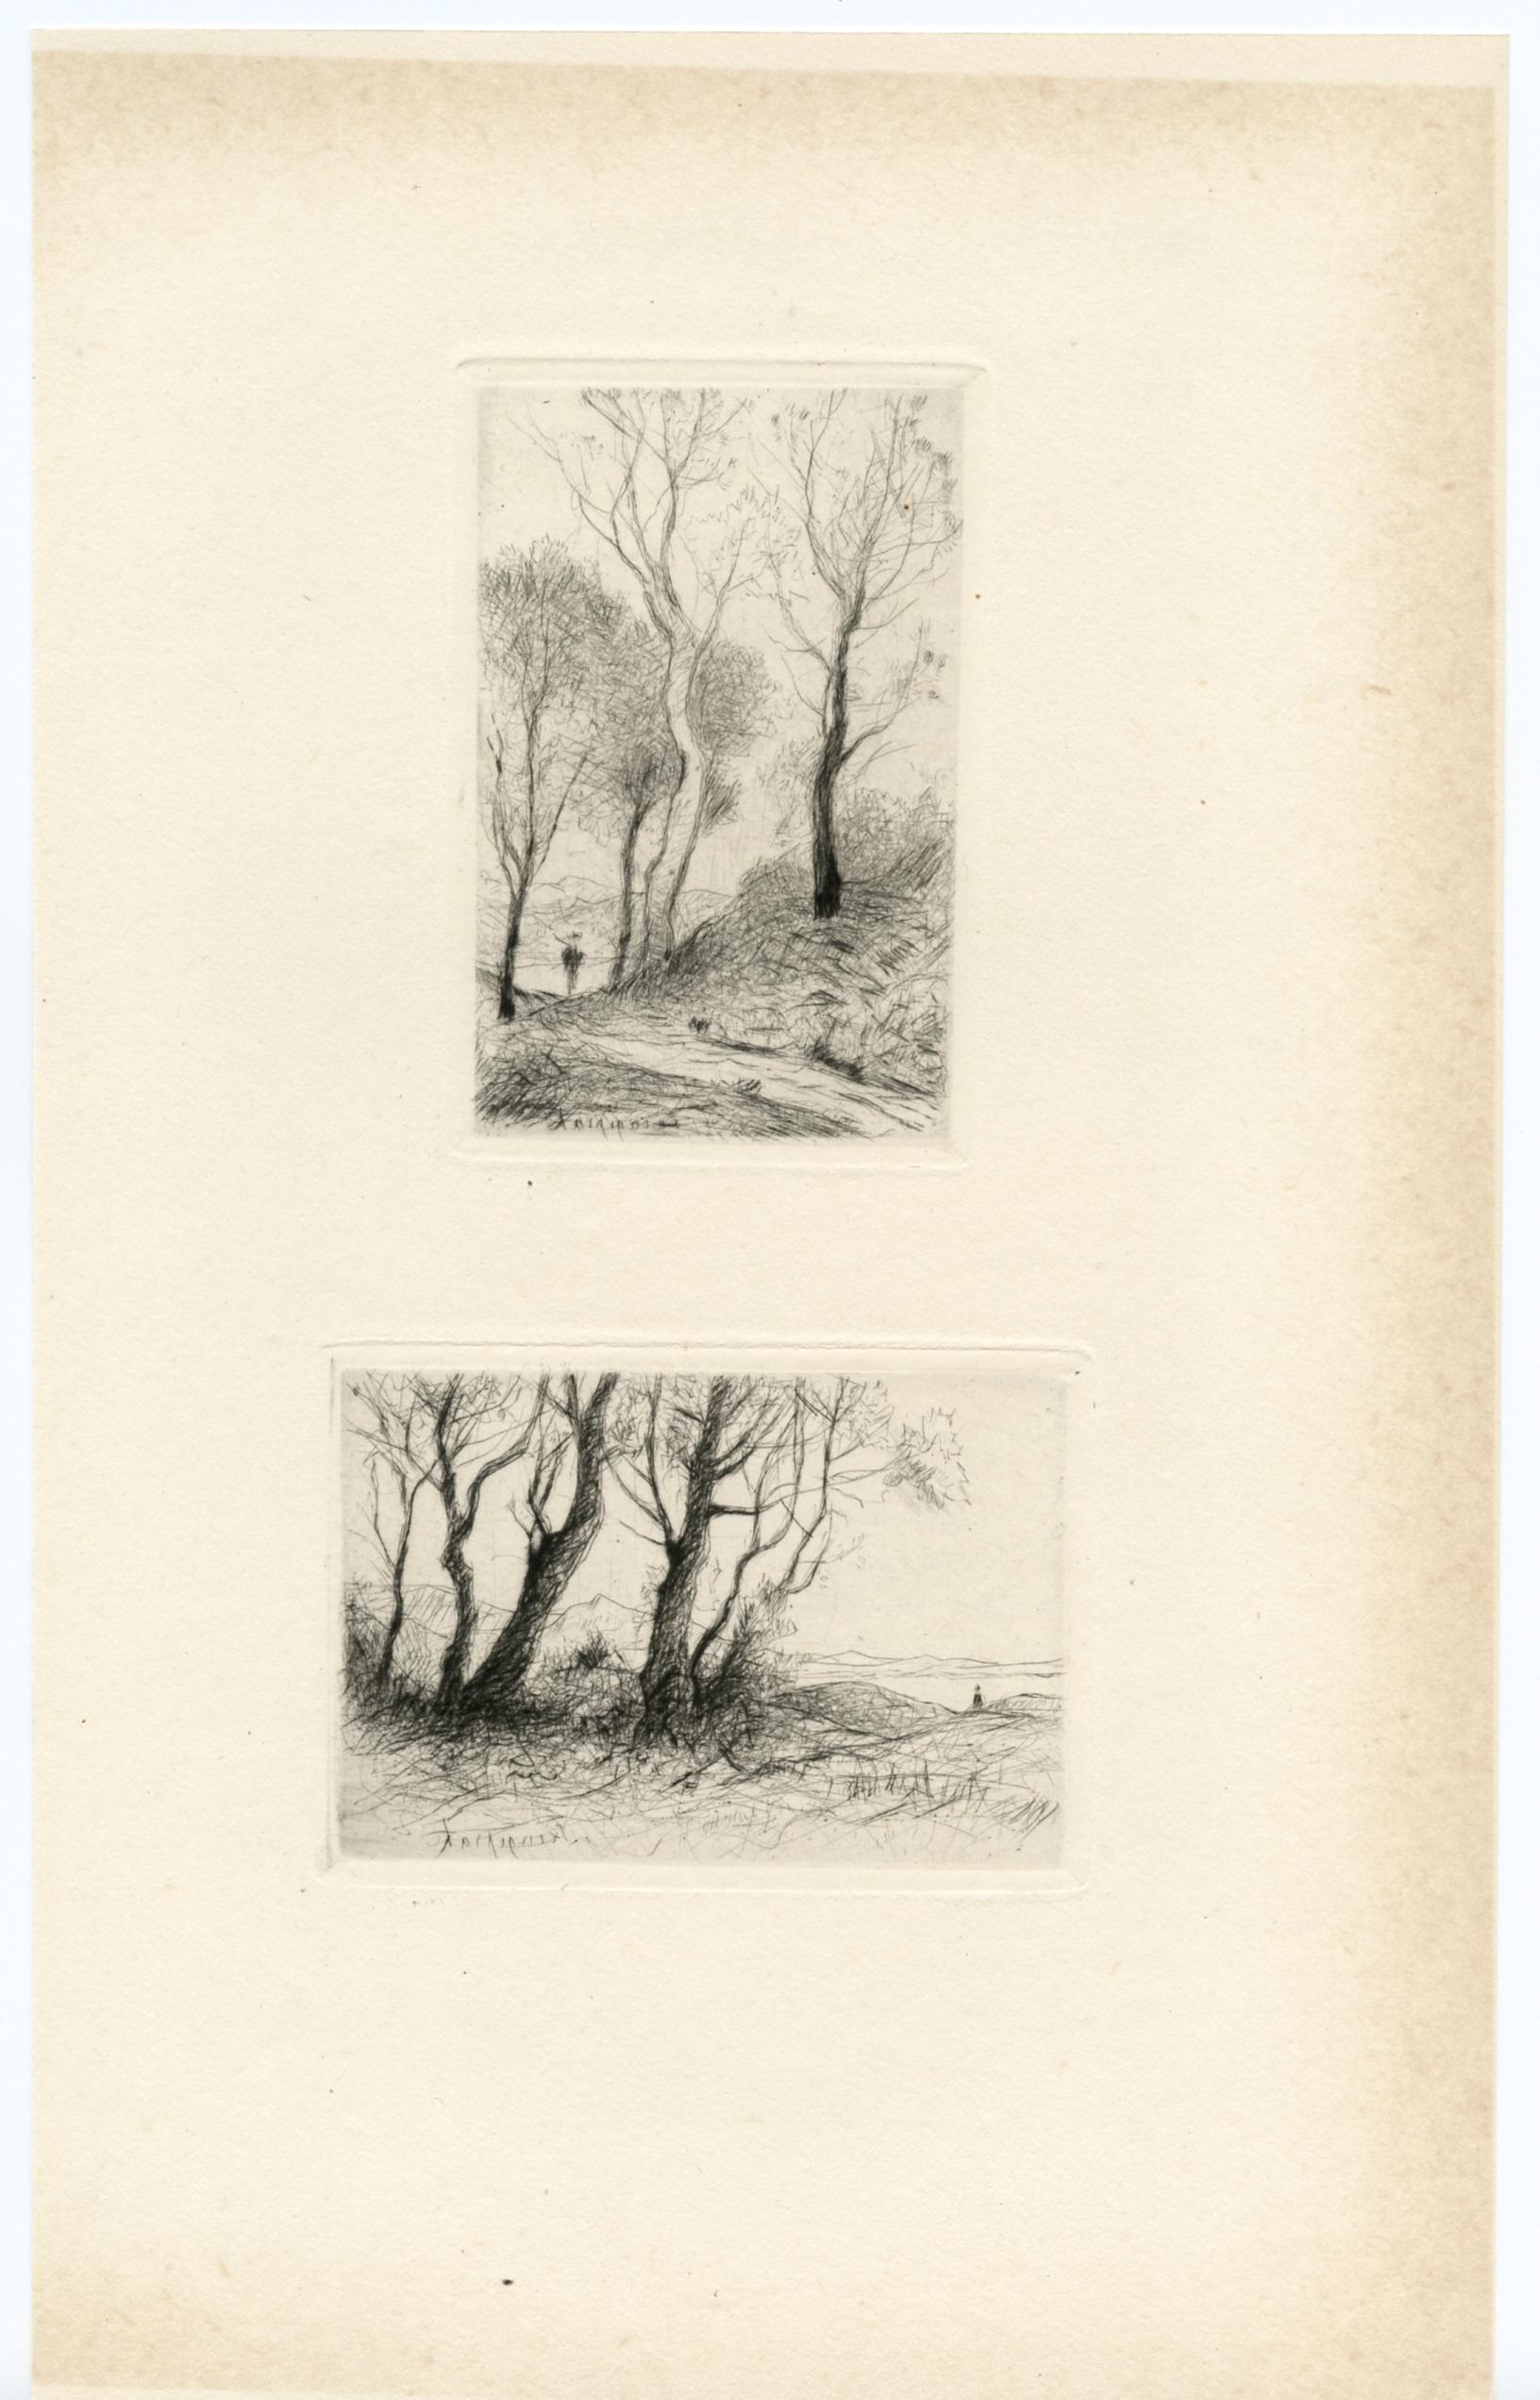 Medium: Original-Radierung und Kaltnadel. Dieses Paar von Kaltnadelradierungen wurde 1917 in Paris gedruckt und von der Gazette des Beaux Arts veröffentlicht. Plattengrößen: 3 1/2 x 2 1/4 Zoll (89 x 58 mm) und 2 1/4 x 3 3/8 Zoll (58 x 85 mm) auf